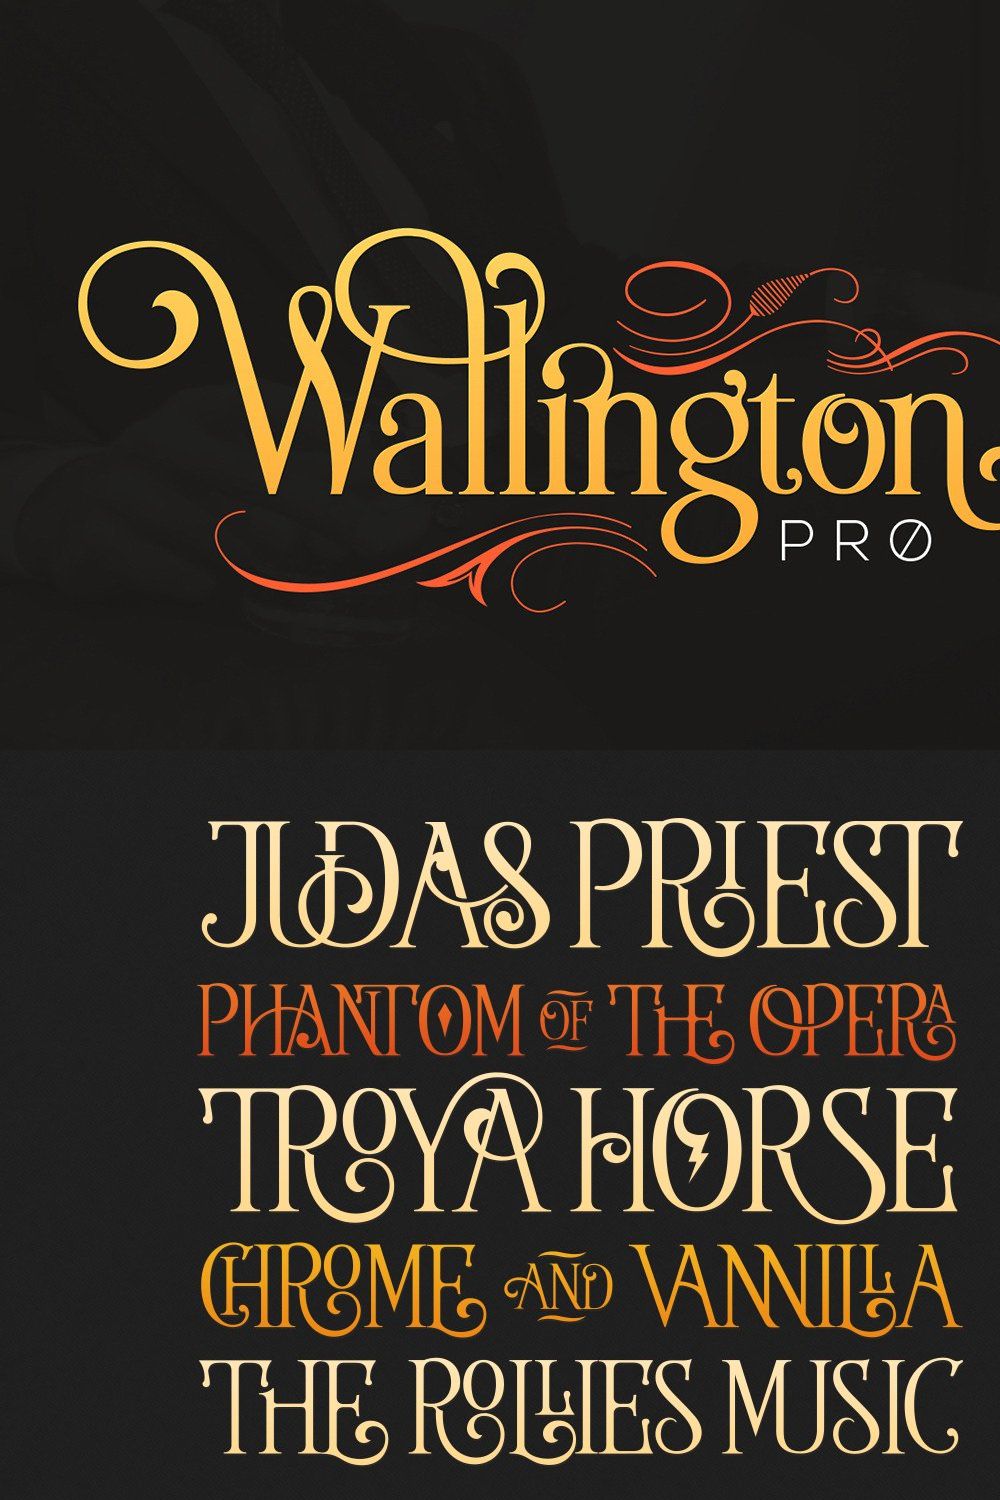 The Wallington Pro pinterest preview image.